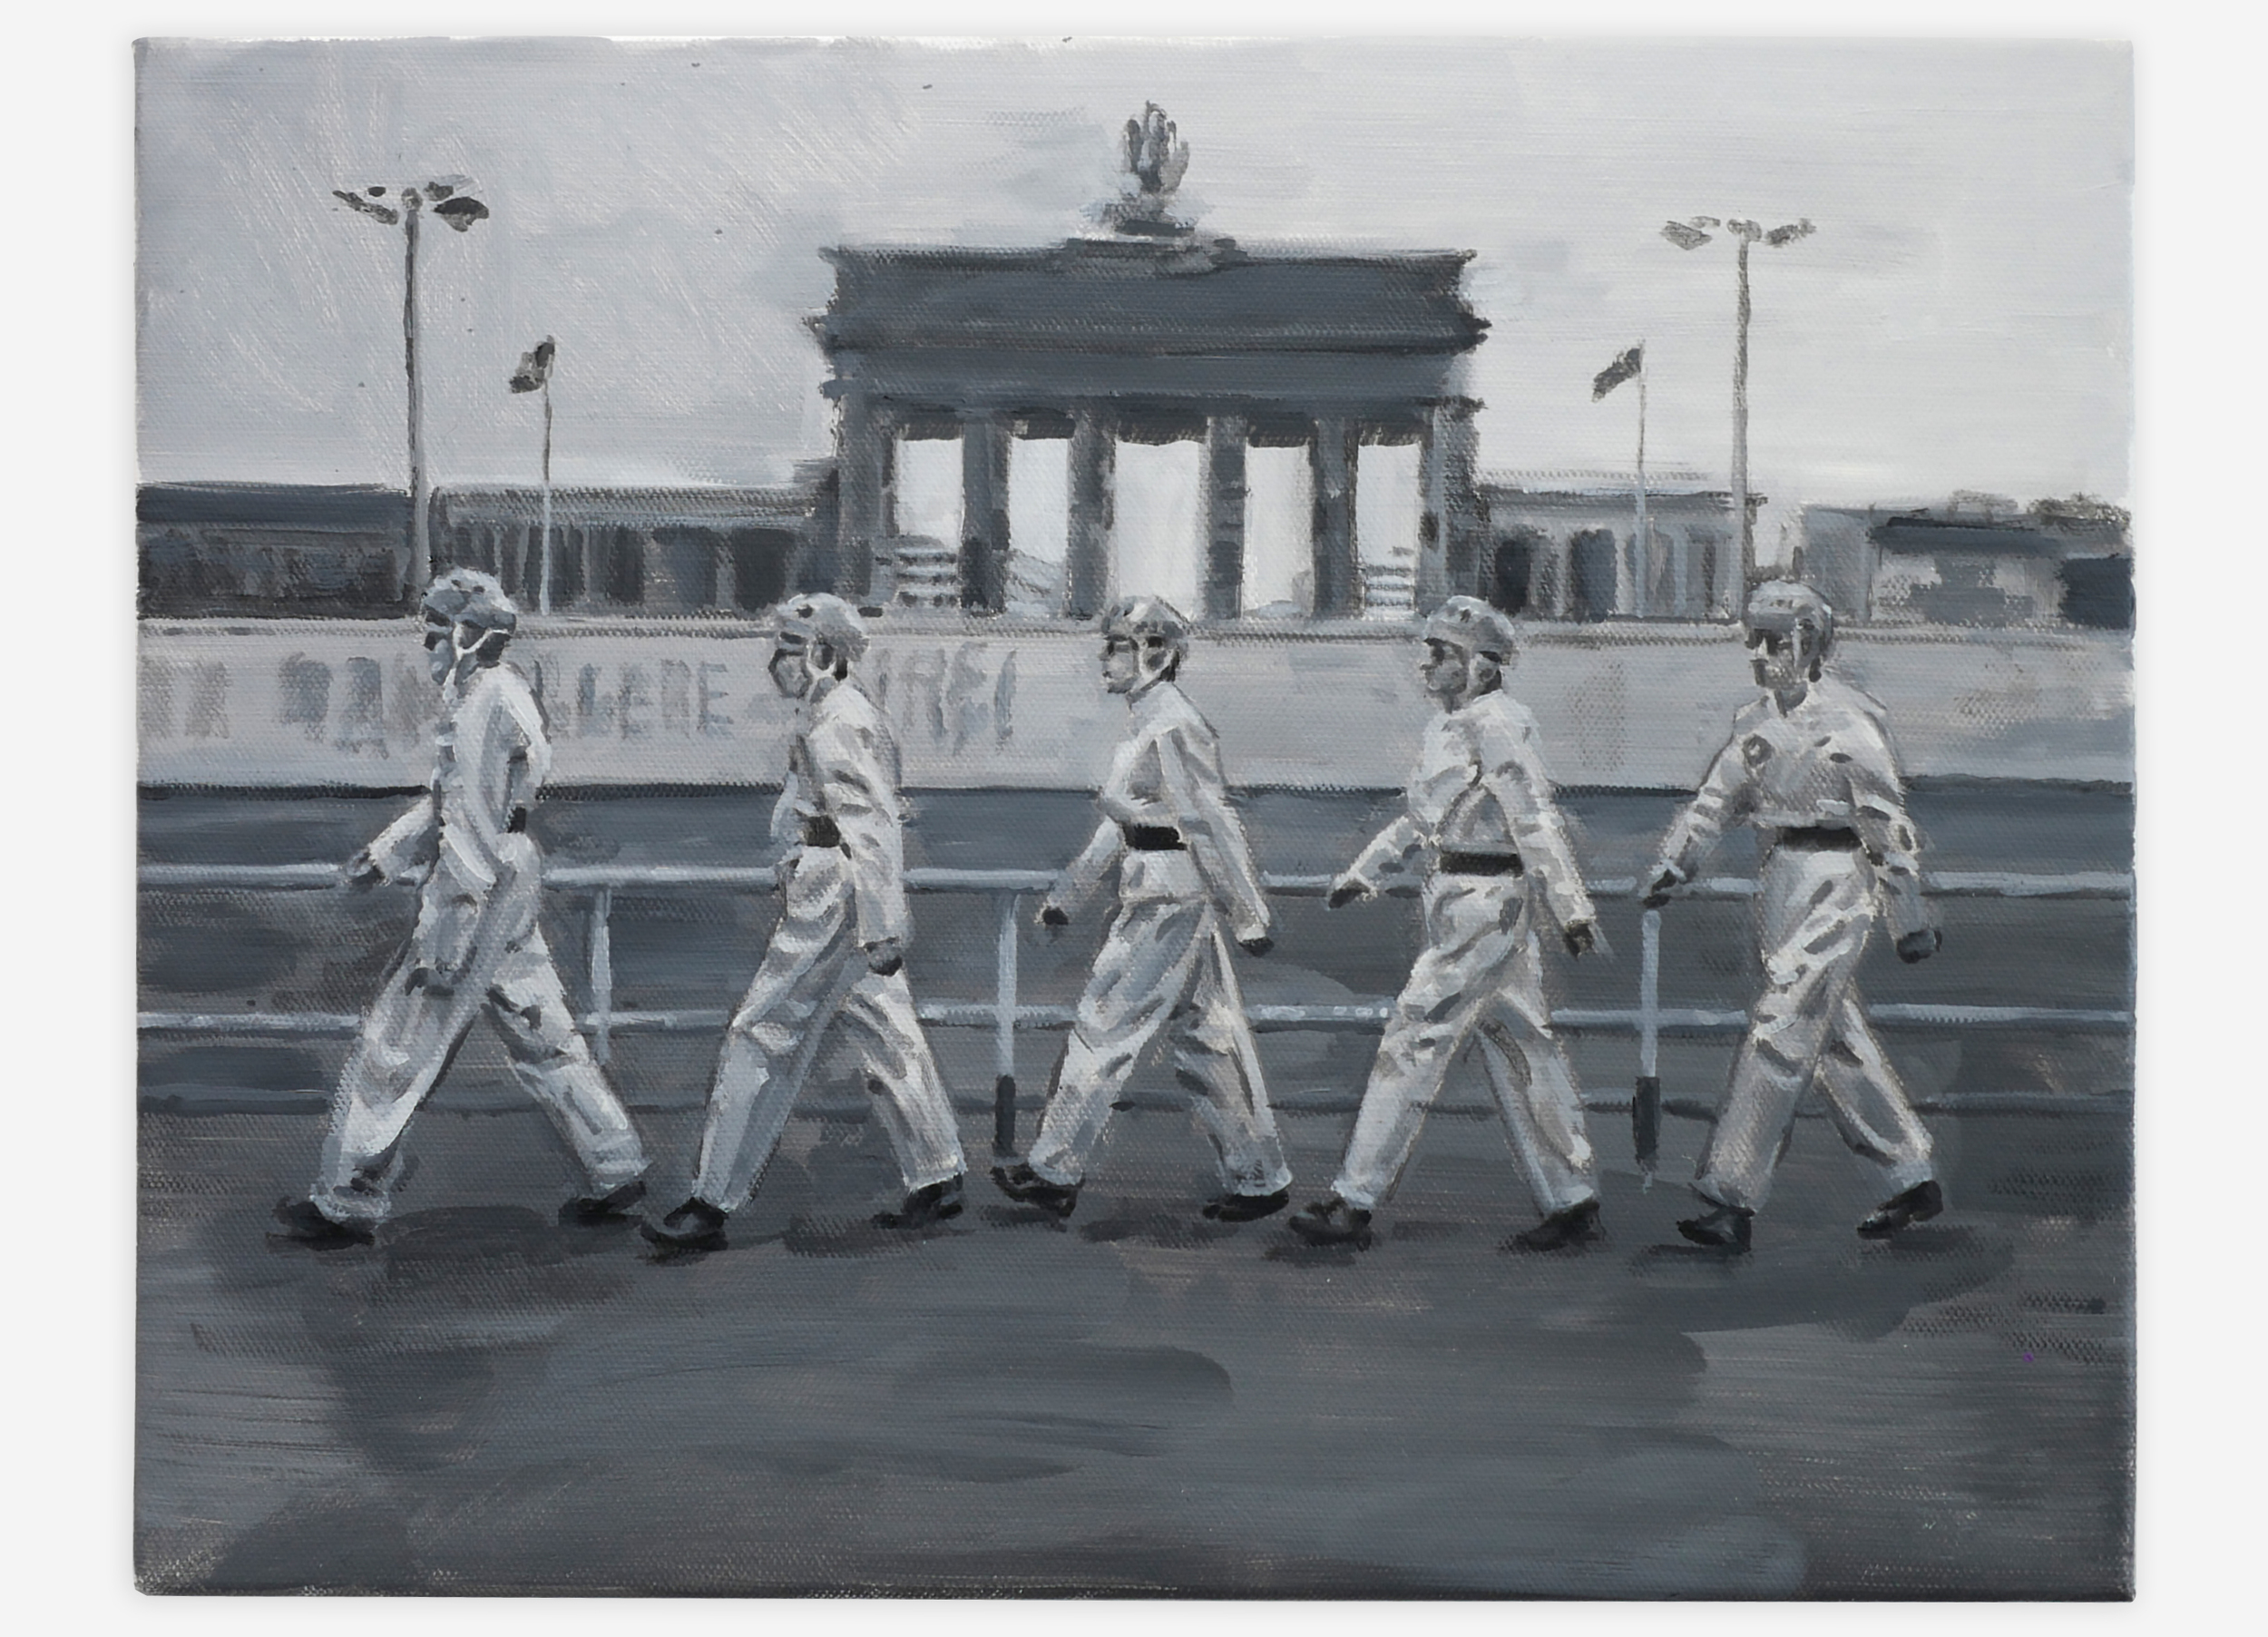   Devo at Berlin Wall 1978, oil on canvas, 11” x 14”, 2016  